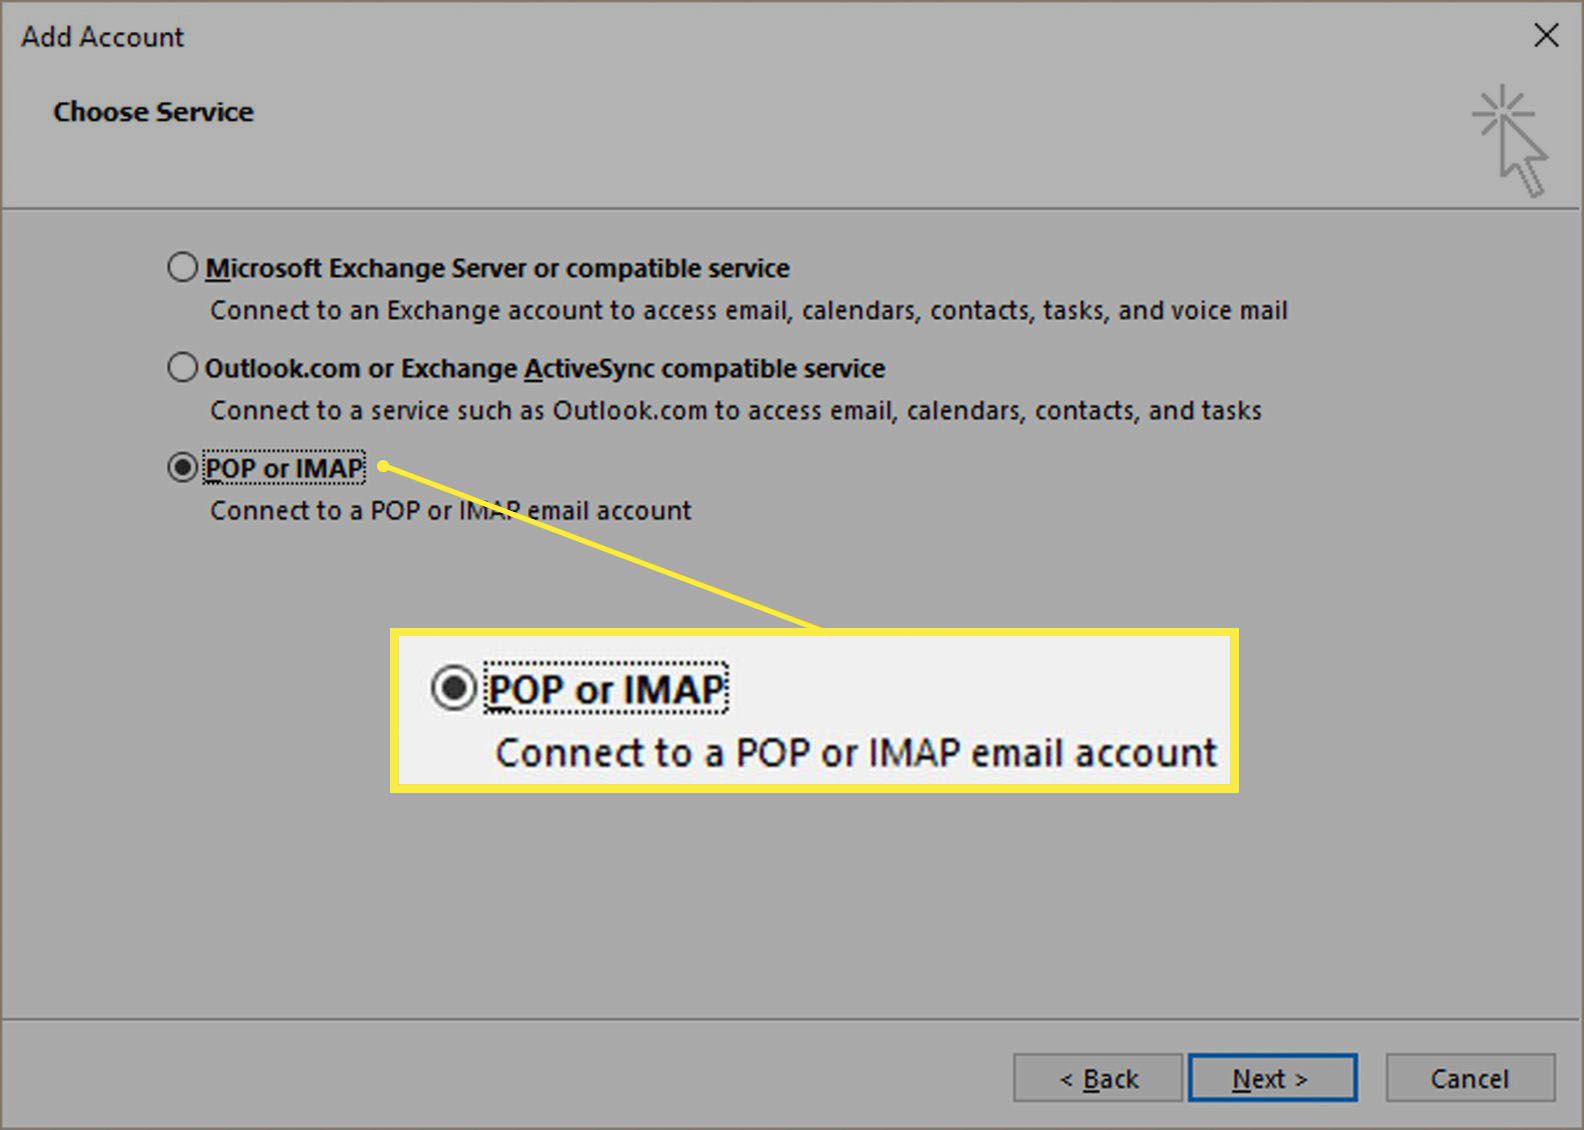 Možnost POP nebo IMAP v dialogu Přidat účet.